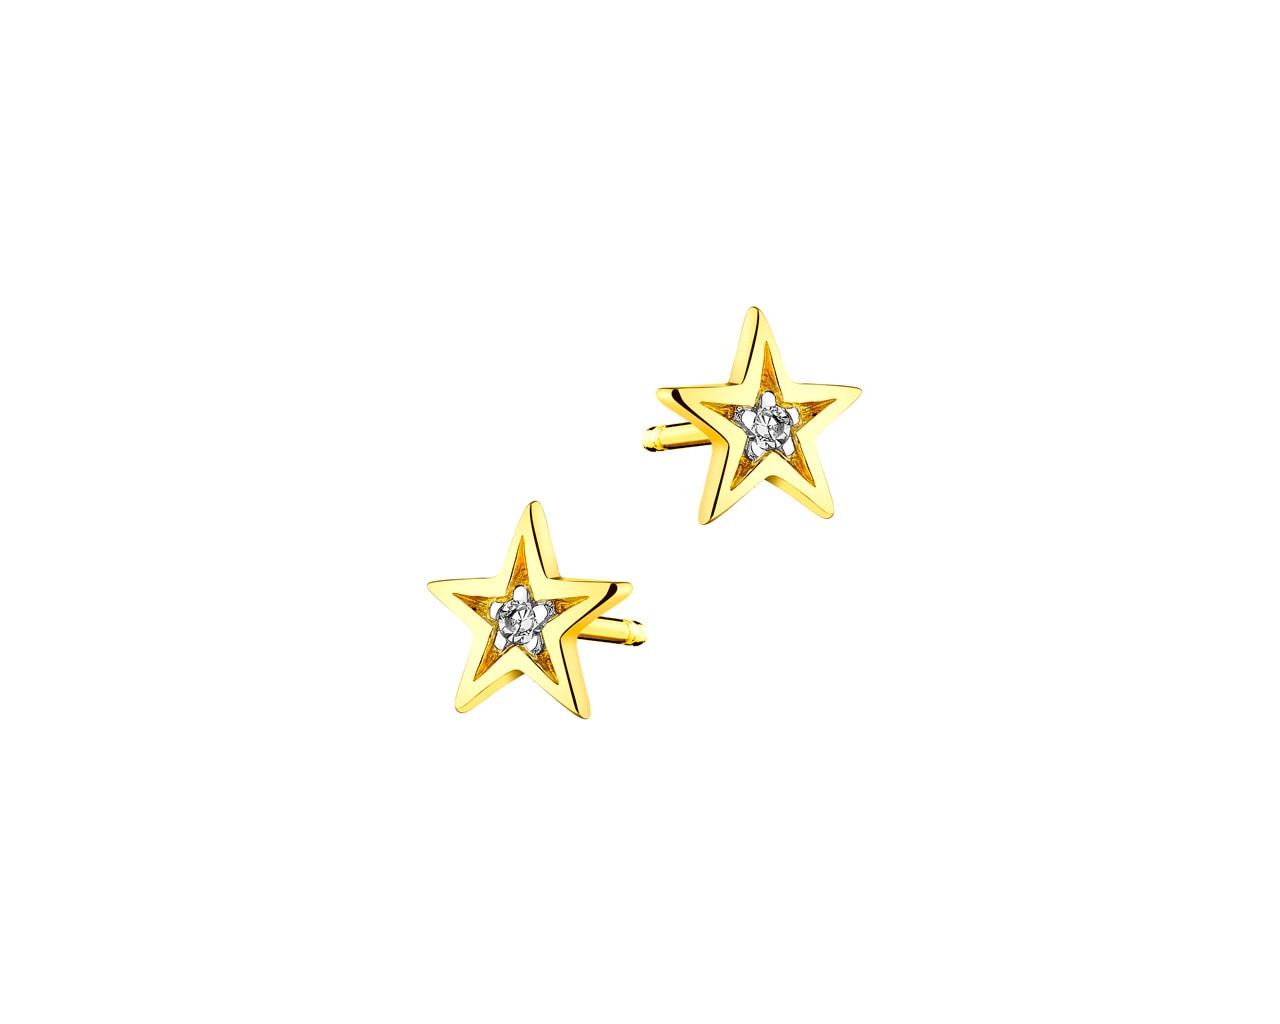 Kolczyki z żółtego złota z diamentami - gwiazdy 0,01 ct - próba 375